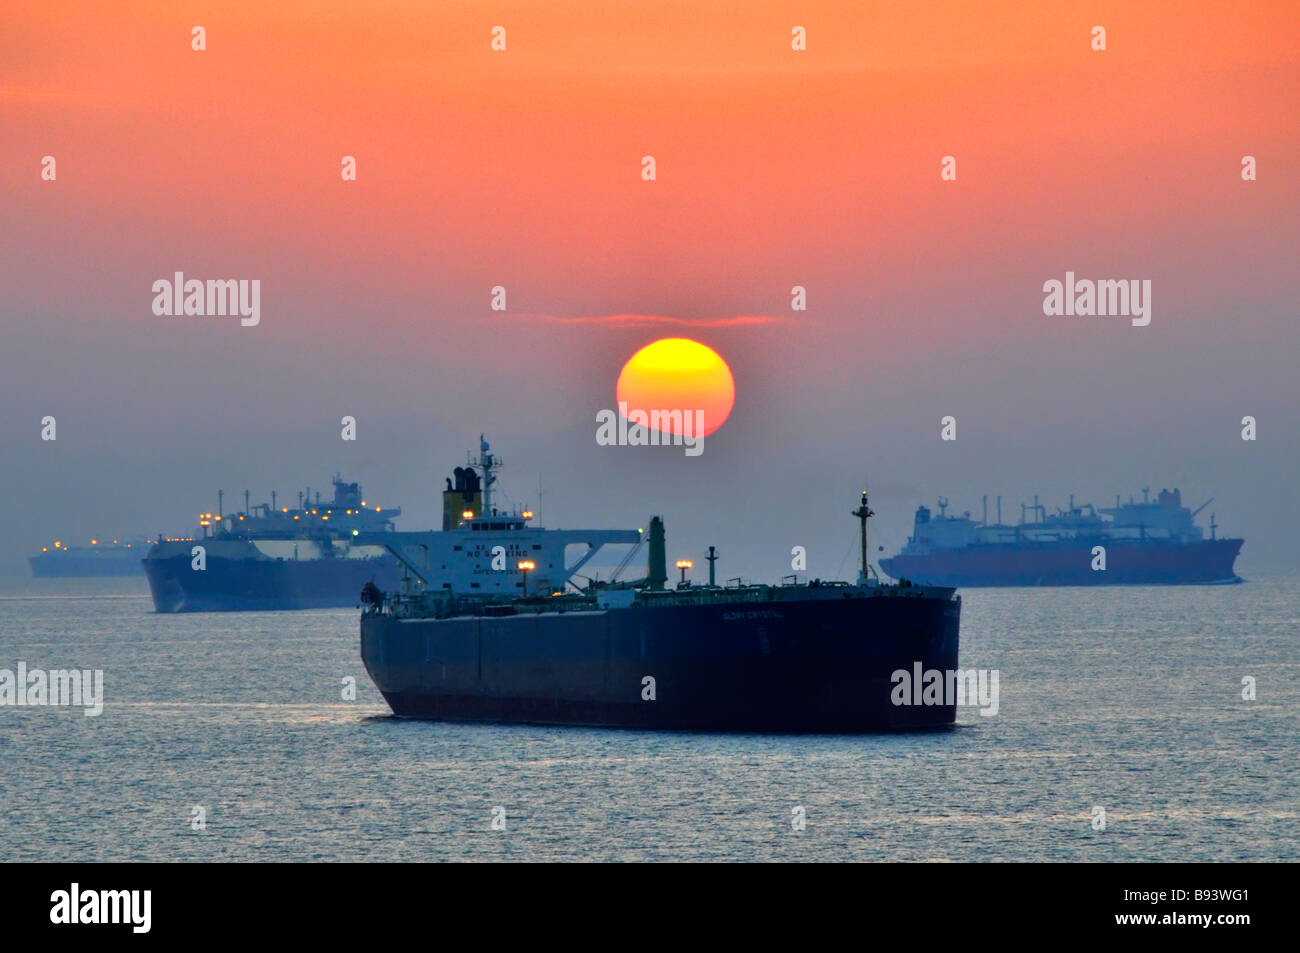 Sonnenuntergang Dunst und unbeladene Schiffe Massengutfrachter und Öltanker Küstenanker VAE Fujairah Bunkerhafen Golf von Oman in der Nähe der Straße von Hormuz Stockfoto